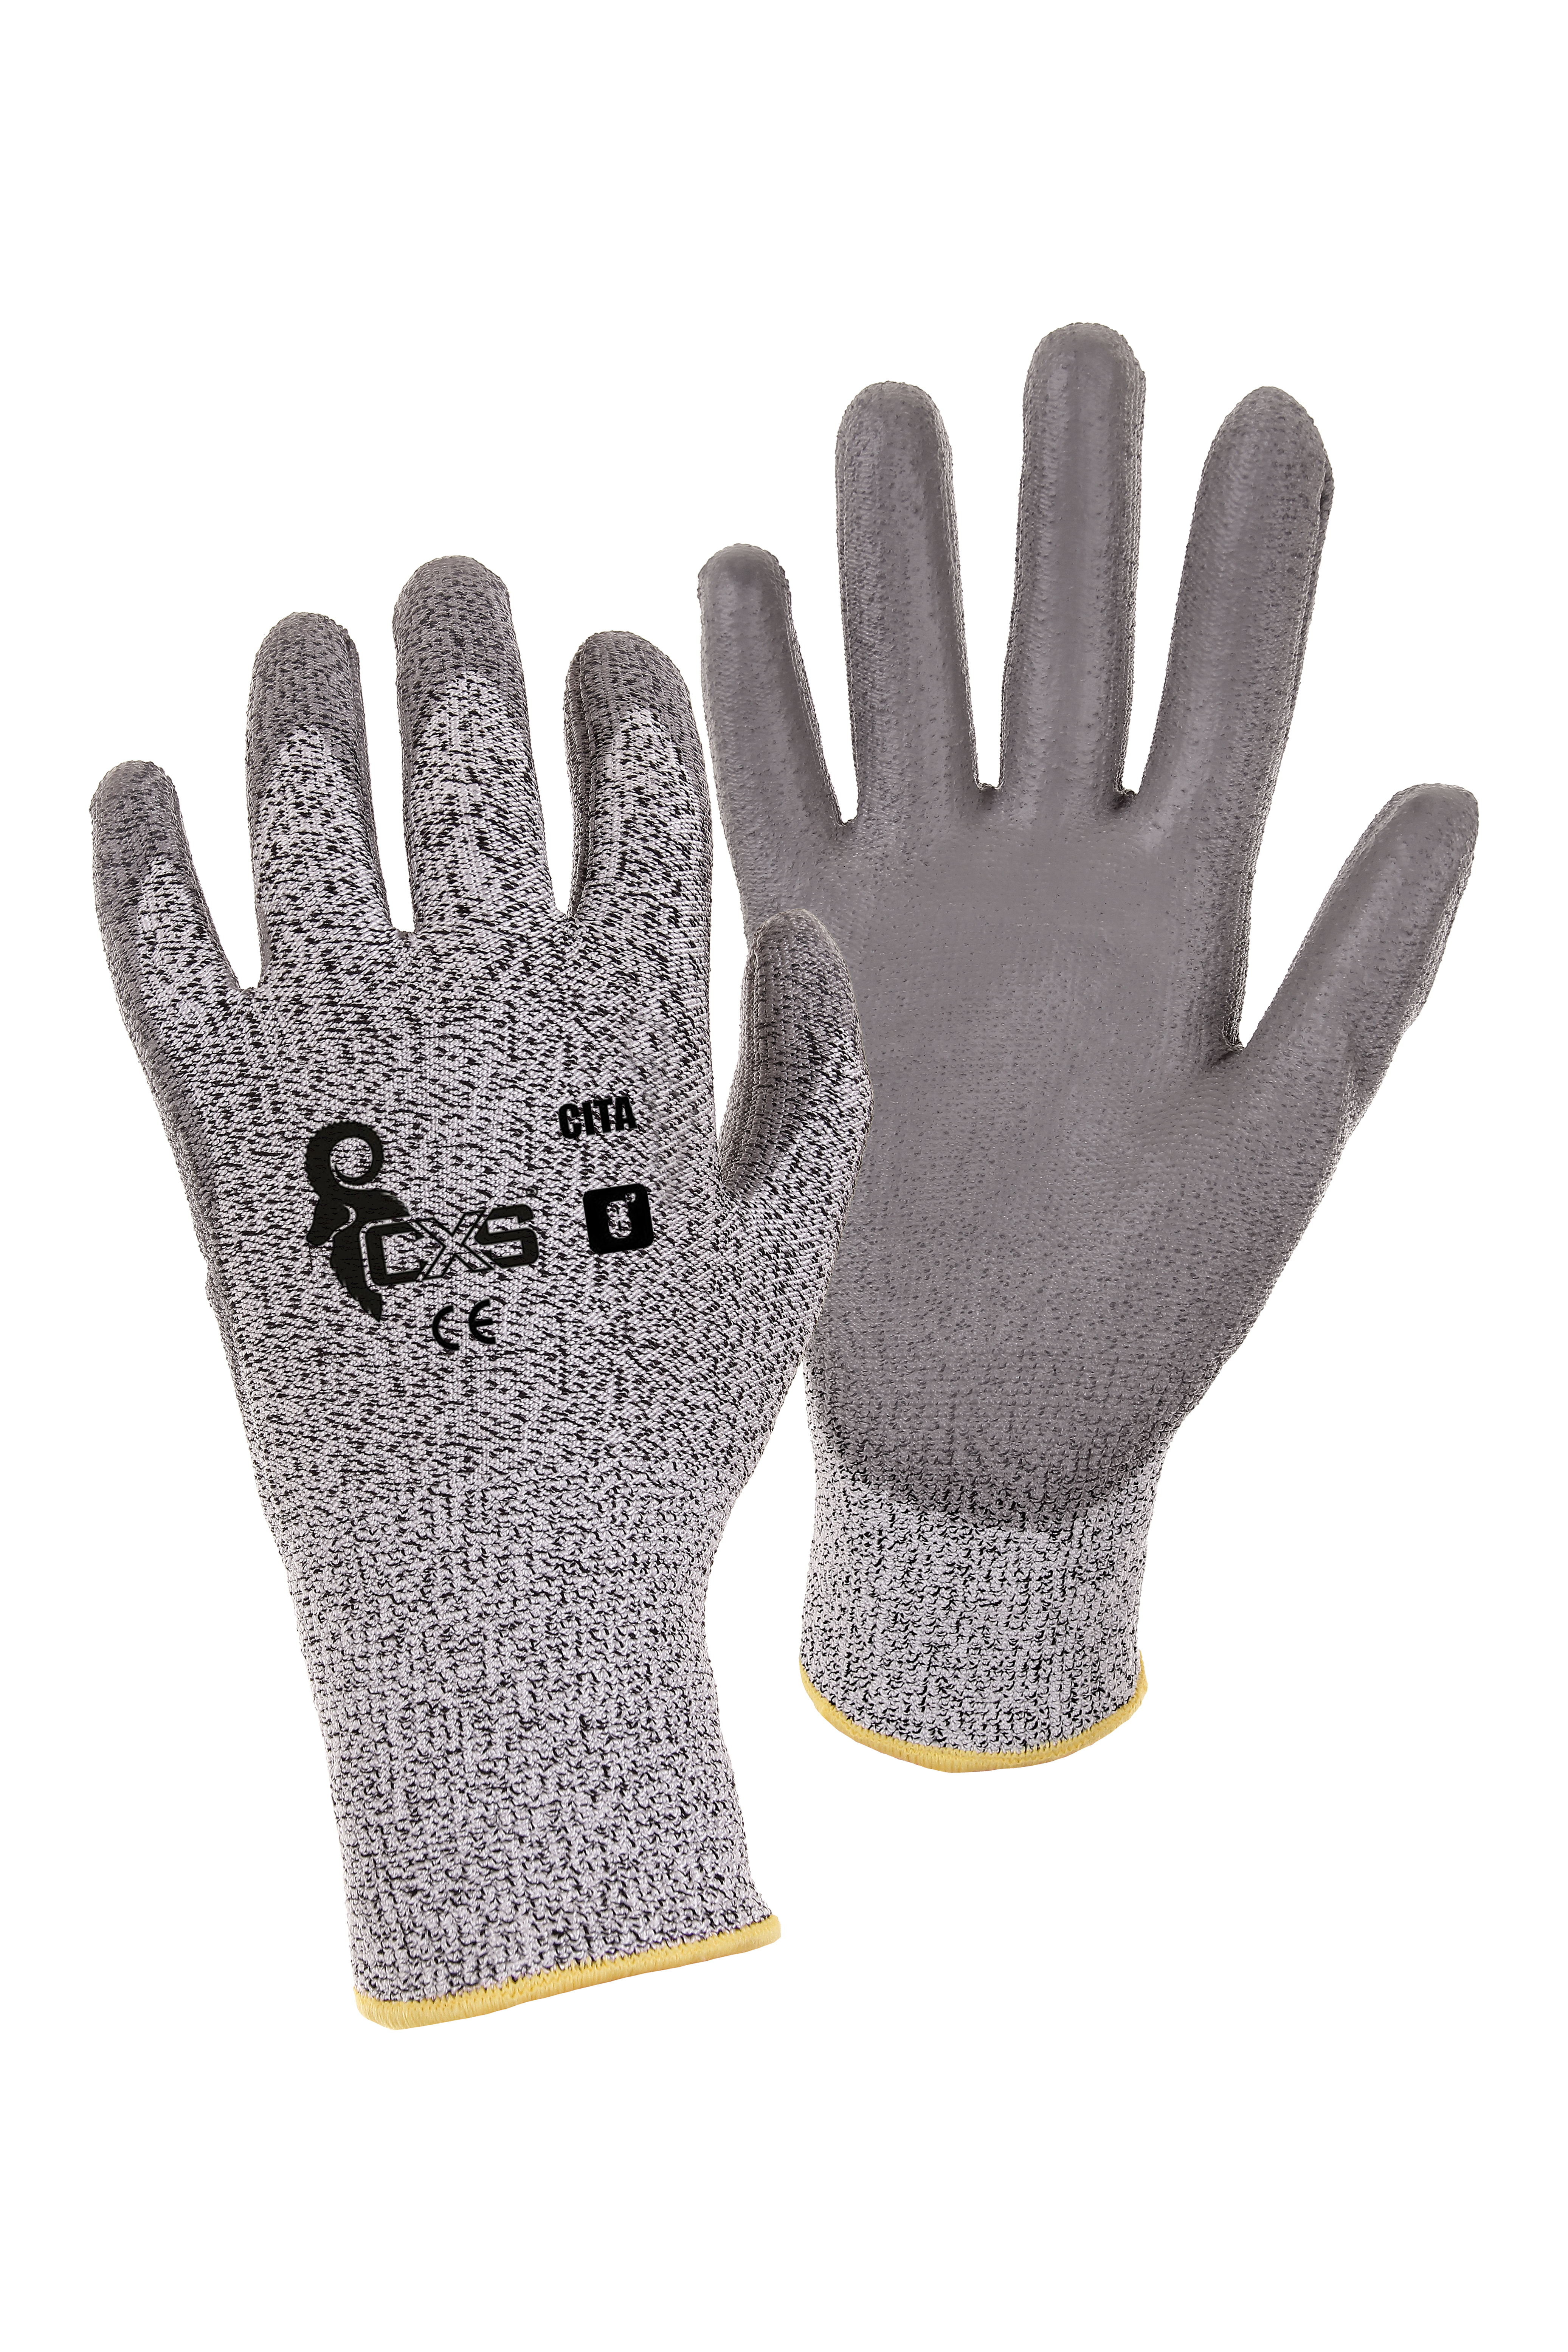 rukavice CITA, protipořezové, šedé, velikost 9 0.05 Kg TOP Sklad4 606059 11